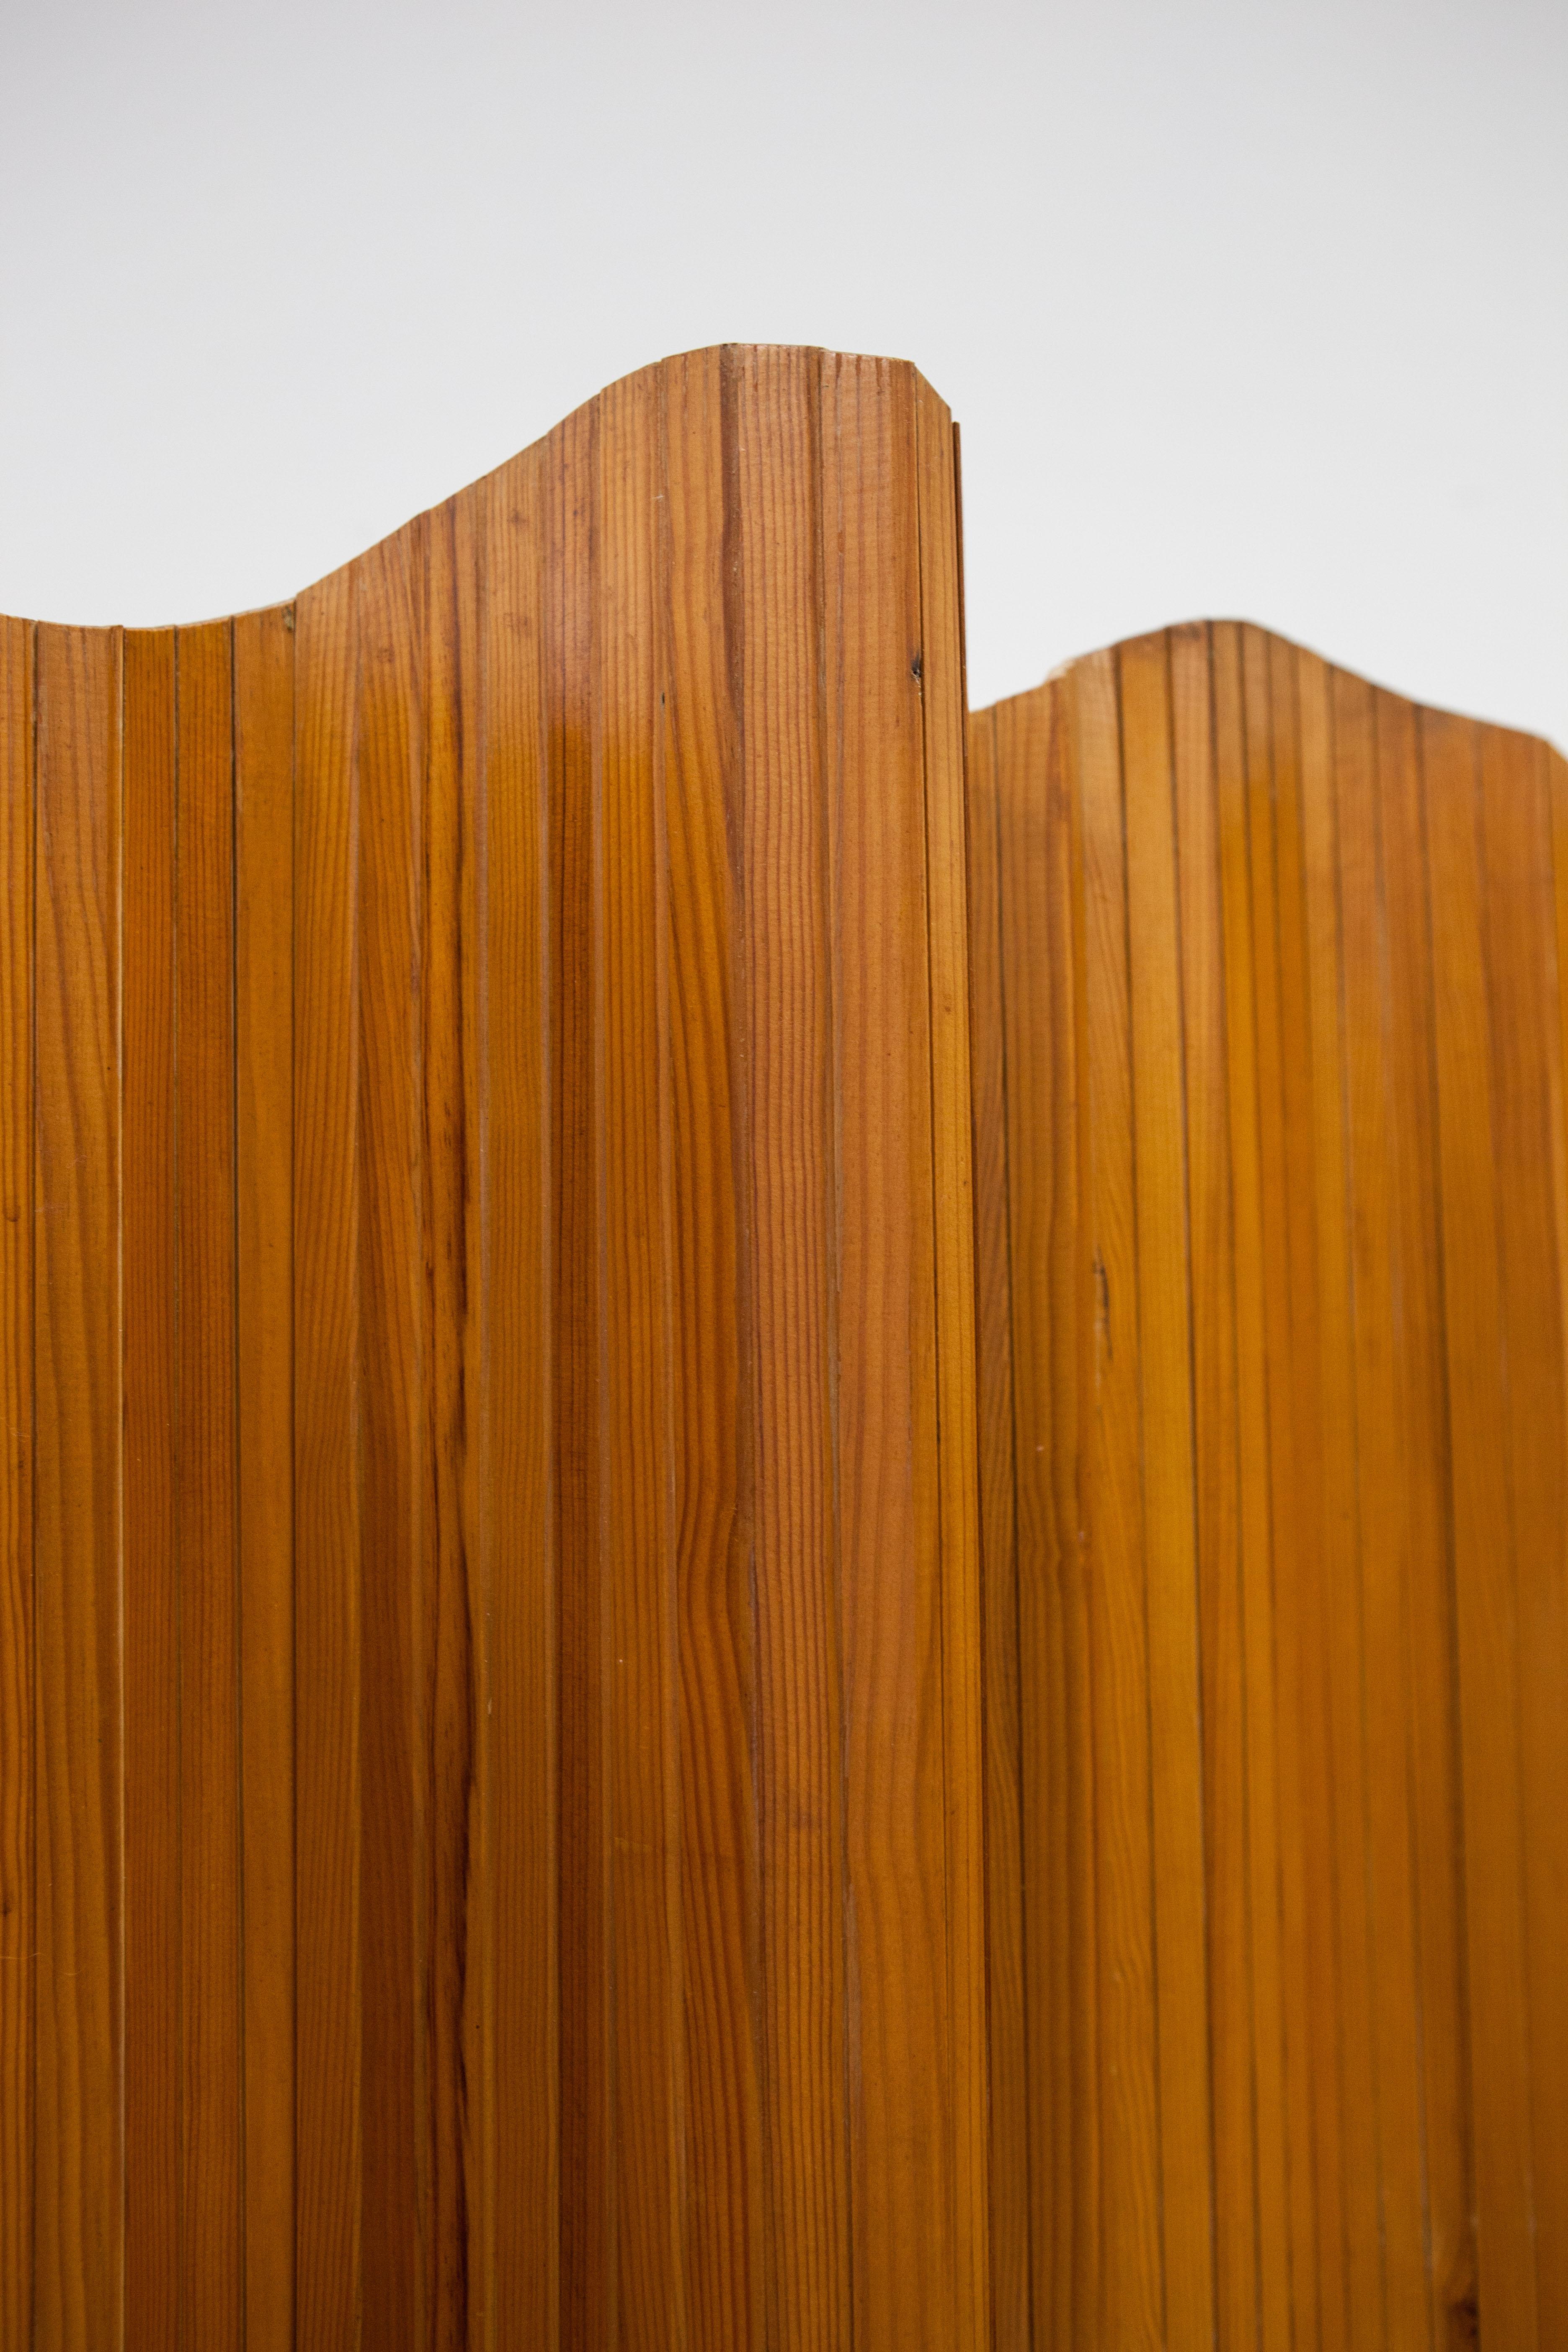 
In den 1930er Jahren entwarf Jomain Baumann einen Raumteiler aus Kiefernholzlatten, die mit Metalldraht befestigt wurden. Er nannte es den Tambourschirm. Die einzelnen Holzlatten erlaubten es, den Schirm in jede gewünschte Form zu falten. Er wurde